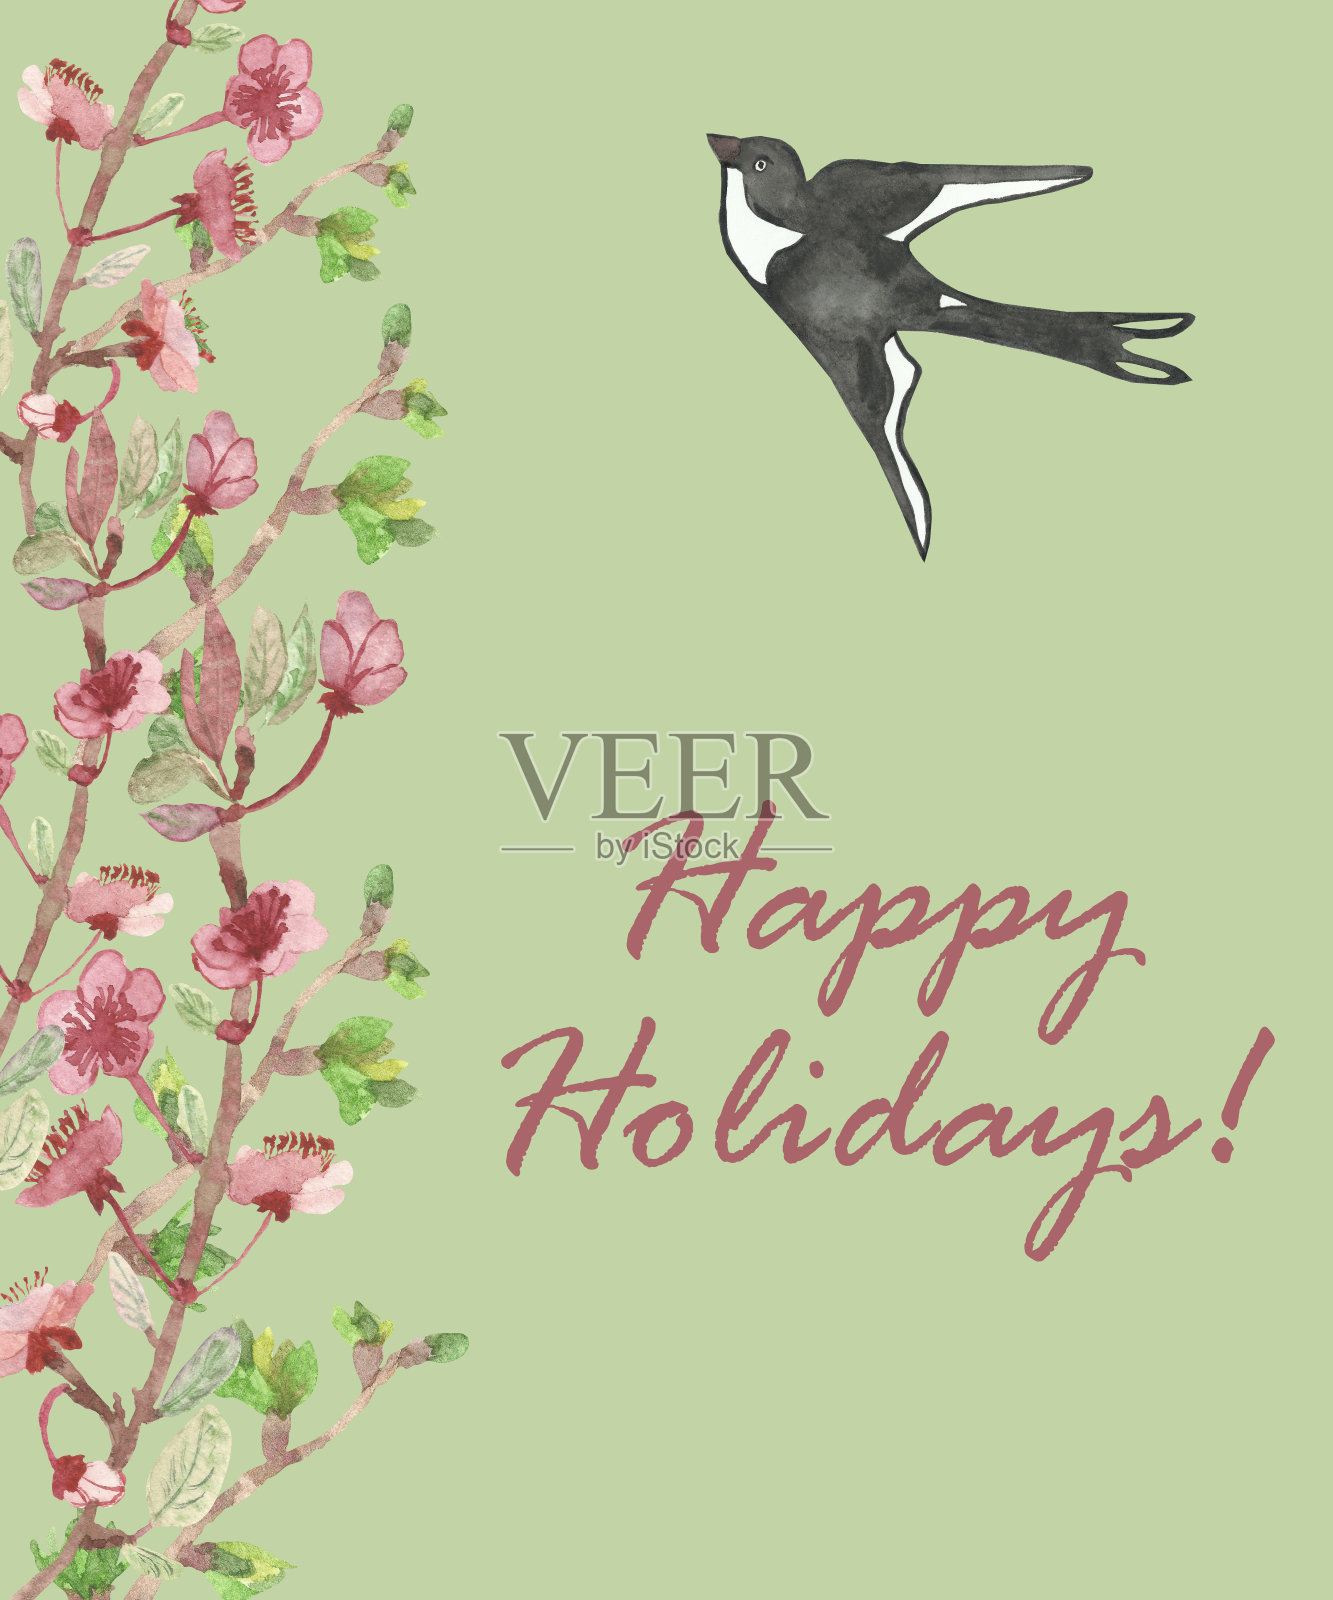 水彩手画自然季节花卉组成与粉红色的苹果花，绿色的树枝，黑色和白色的燕子鸟与快乐的节日文字在绿色的背景贺卡设计模板素材